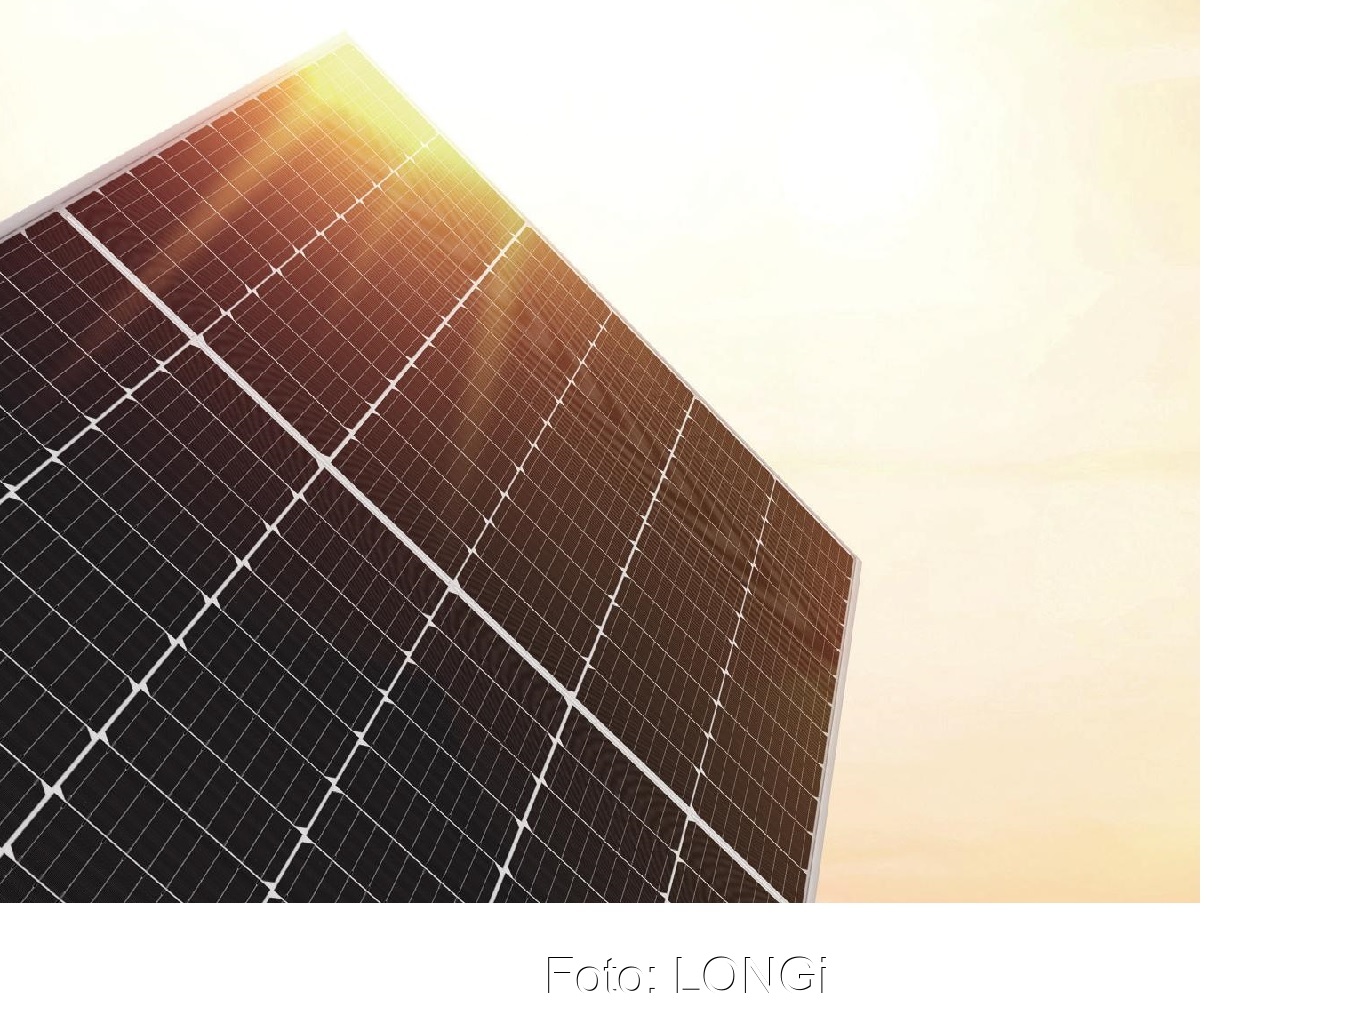 LONGi Geschäftsbericht 2019: Starkes Wachstum | Solarserver